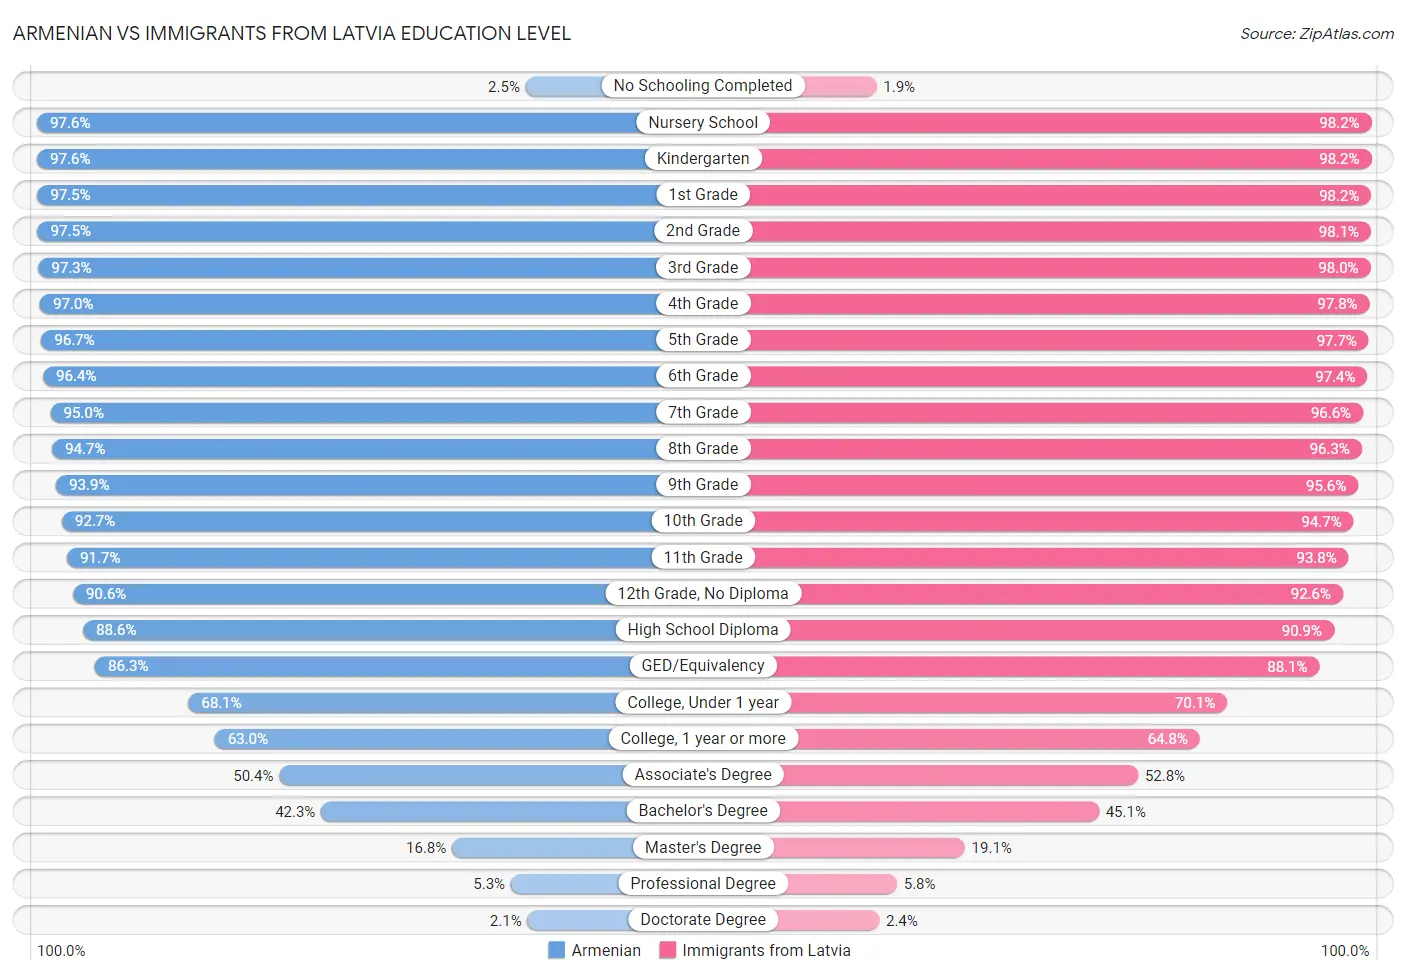 Armenian vs Immigrants from Latvia Education Level